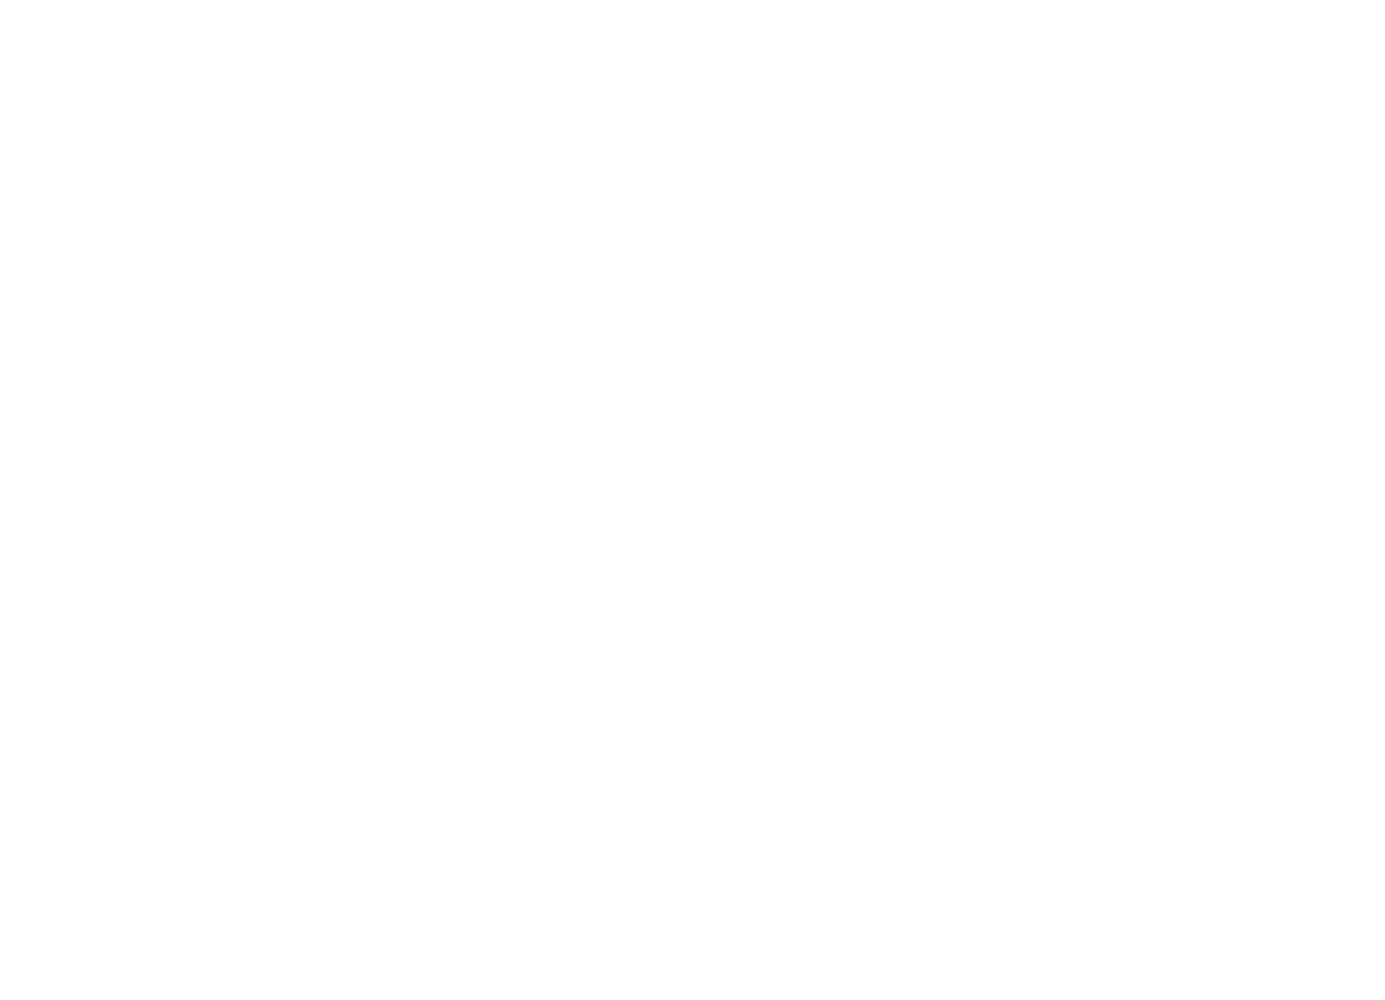 Chicago Abortion Fund logo.